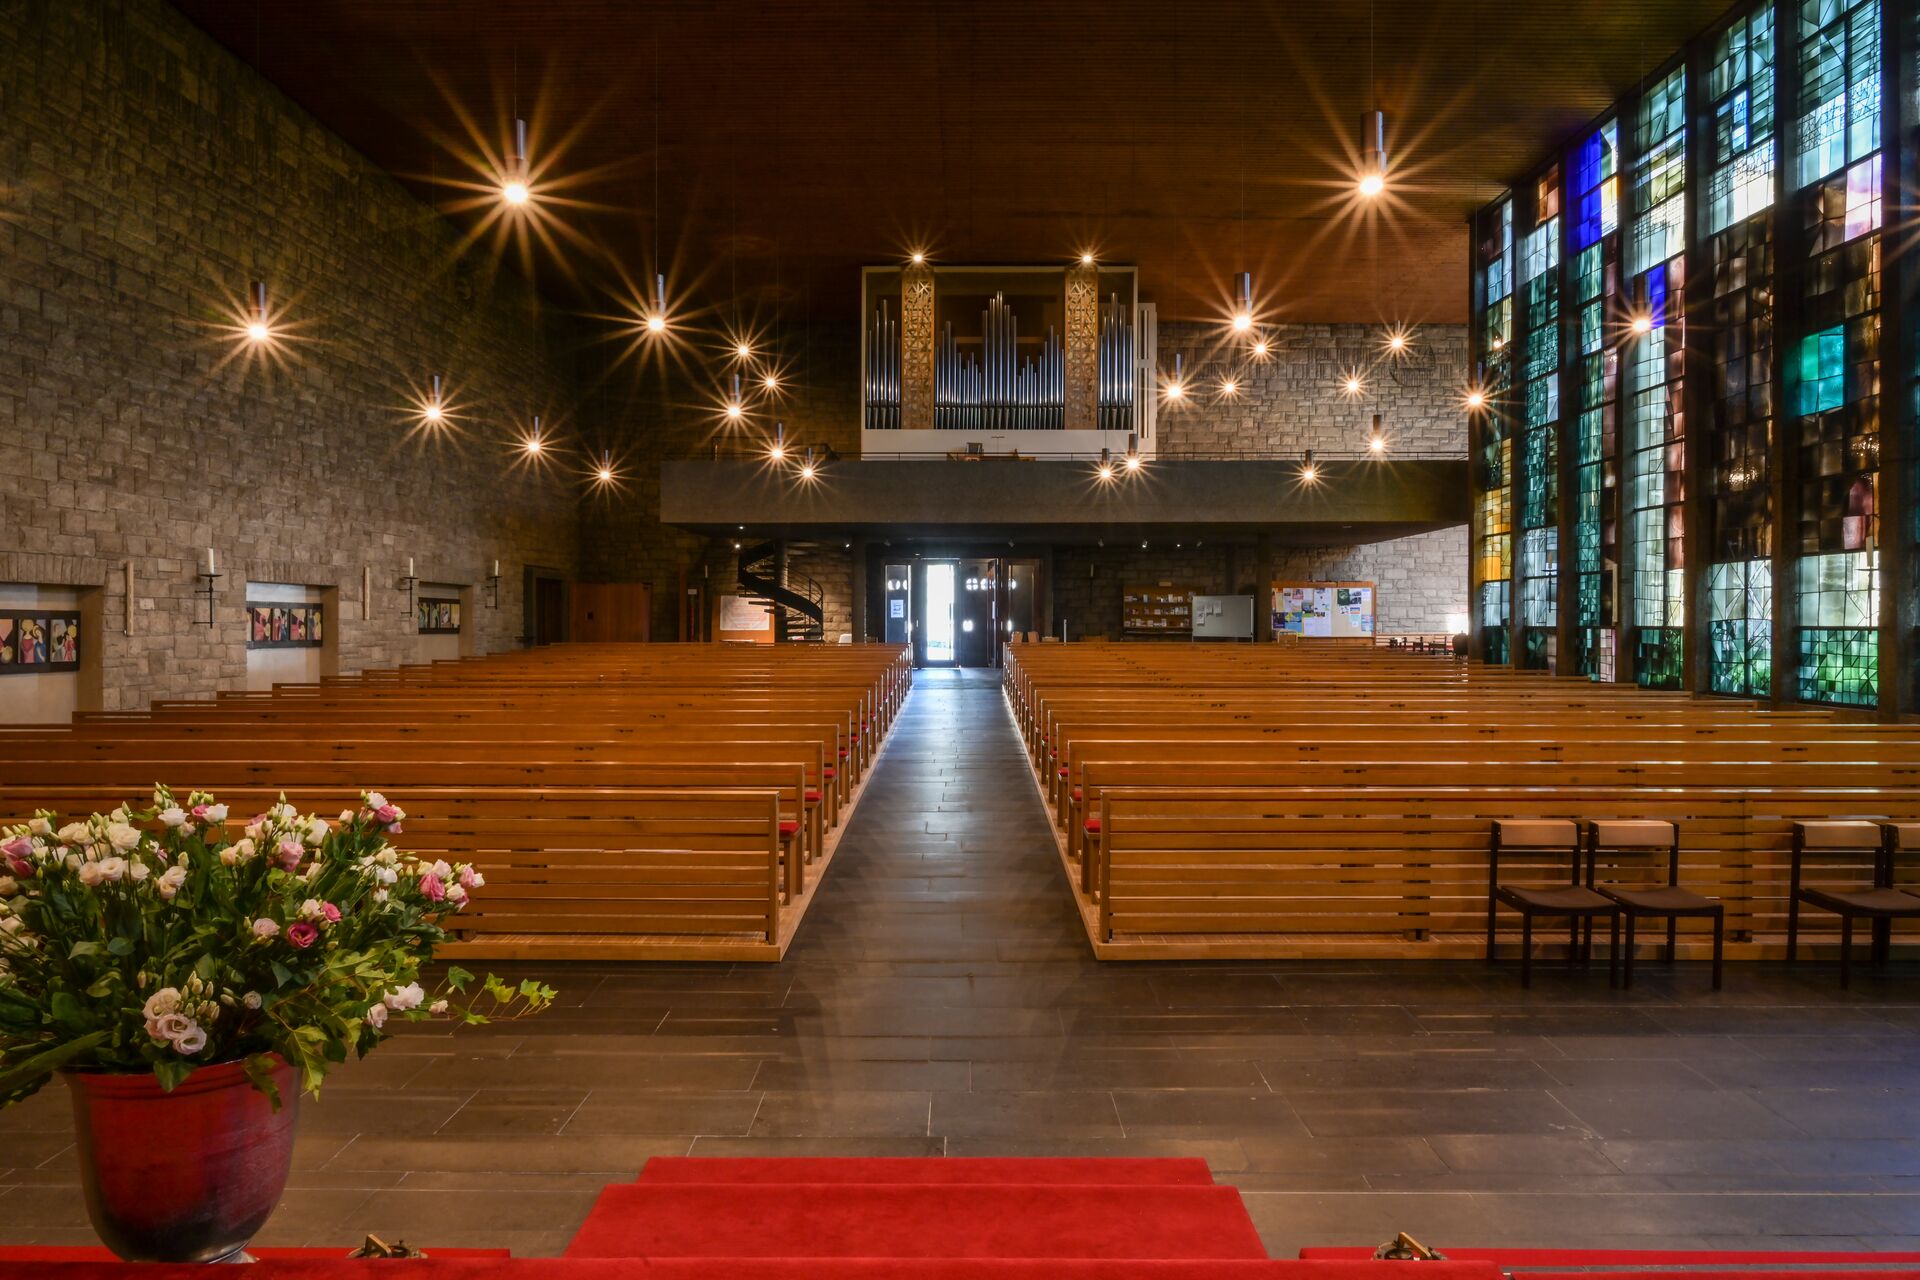 Blick durch einen Kirchenraum auf eine Orgel, Lampen wie Sterne, bunte, moderne Glasfenster rechts im Bild